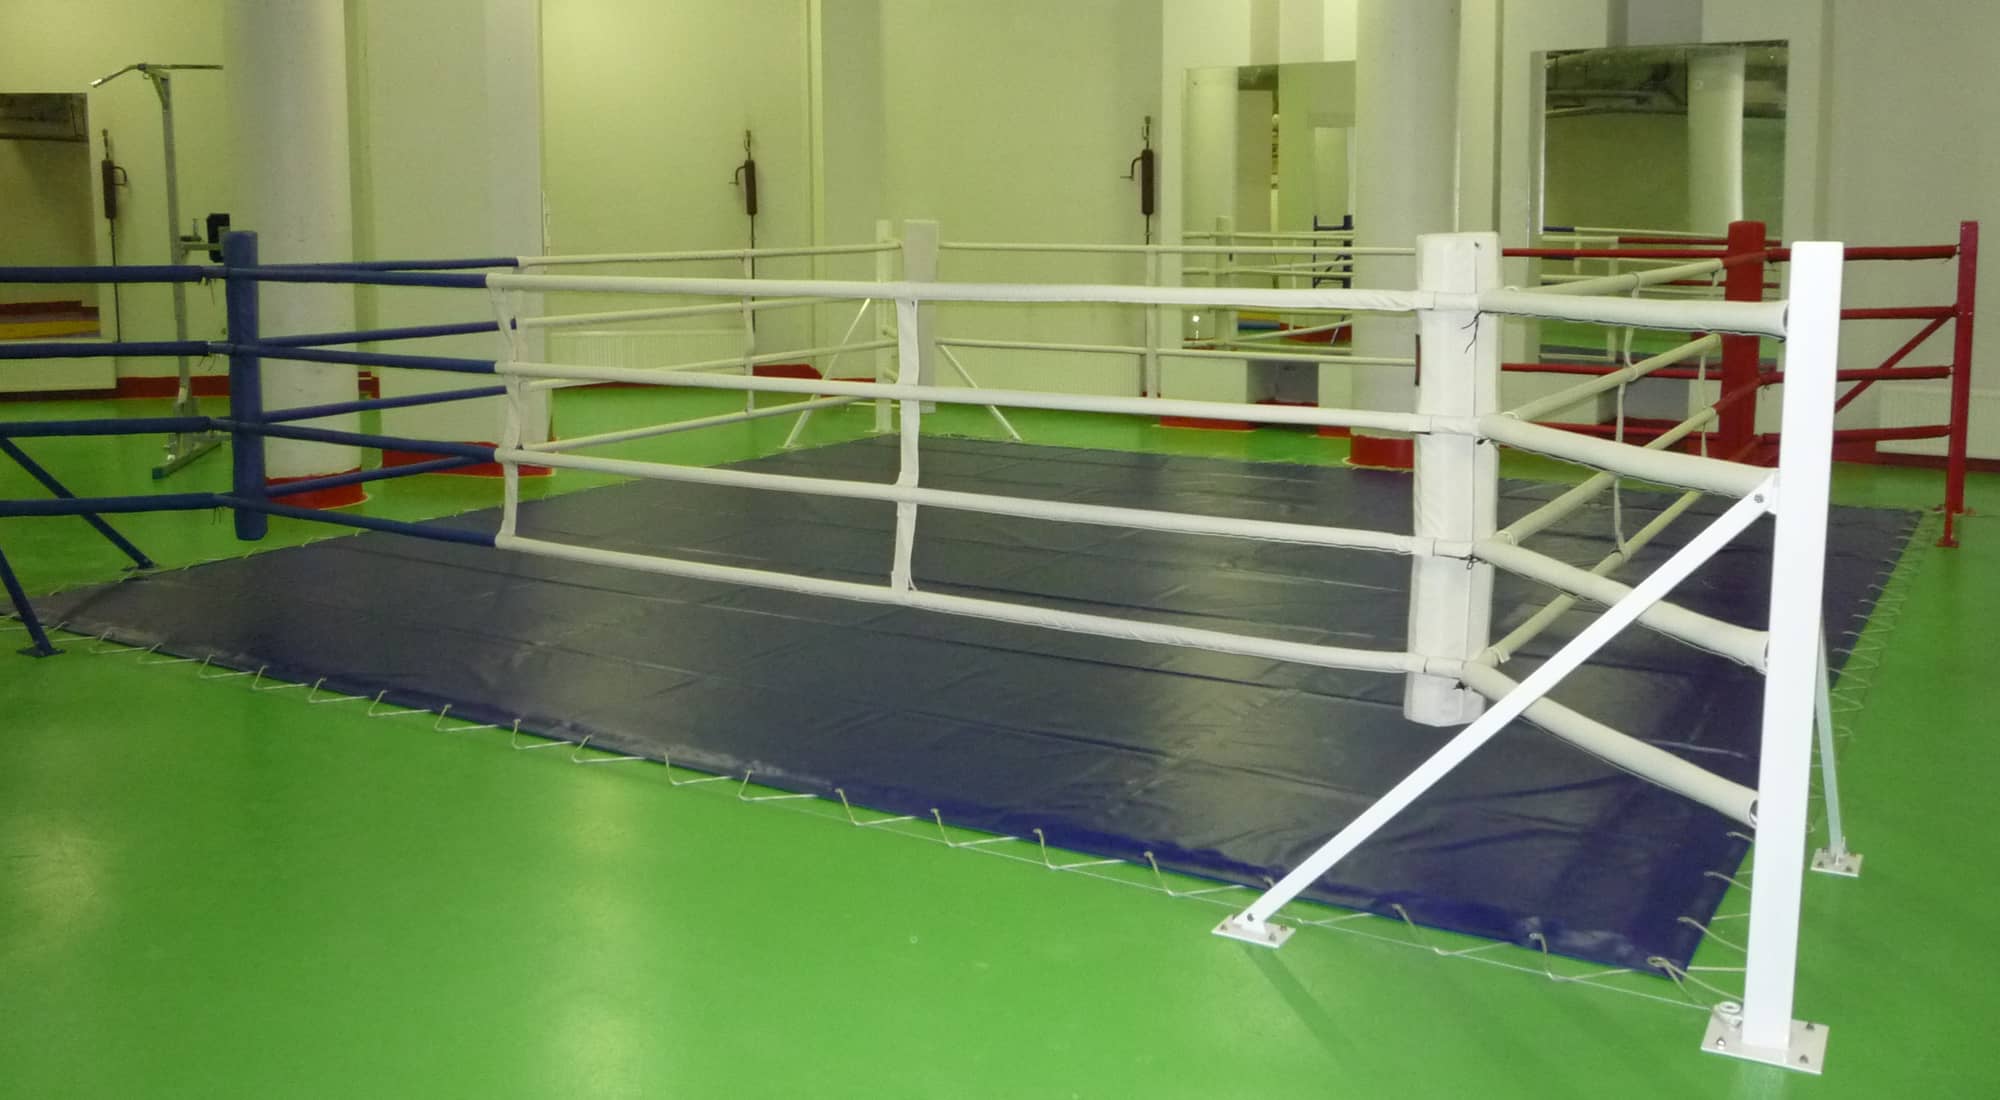 Ринг боксерский напольный Totalbox на упорах размер по канатам 6×6 м РНУ 6 2000_1100